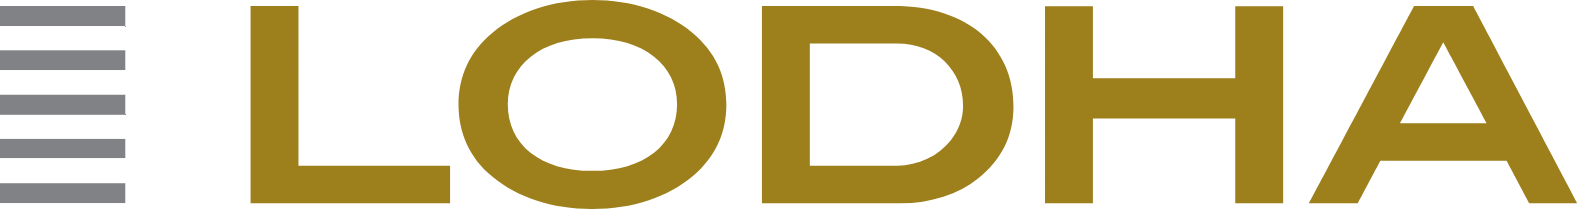 Lodha Group logo large (transparent PNG)